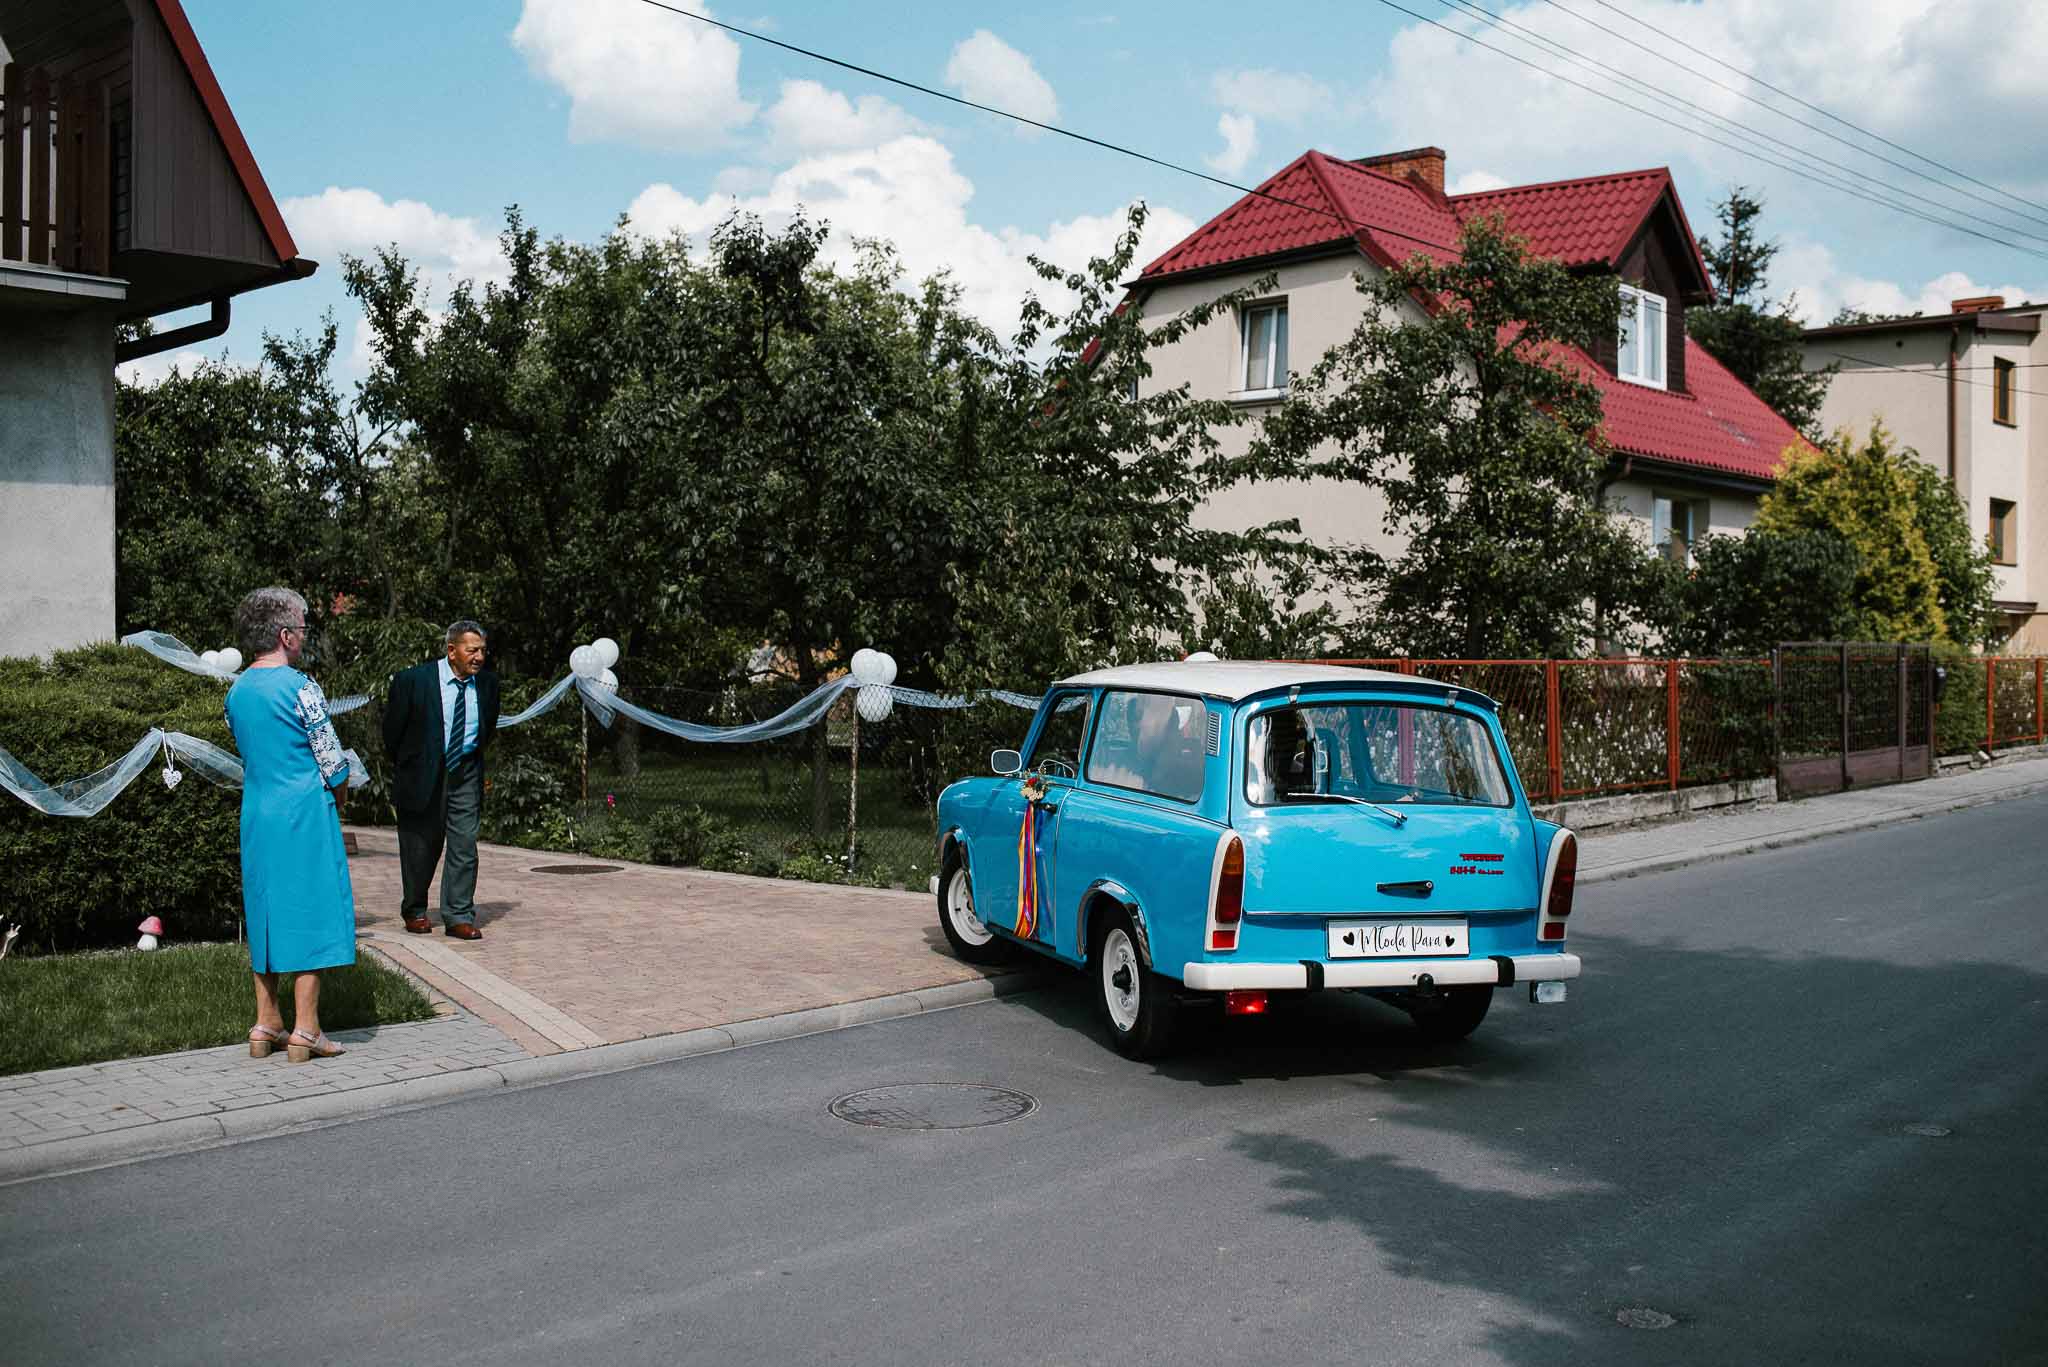 Państwo młodzi wsiadają do starego, niebieskiego trabanta - ślub w stodole Dyrkowo